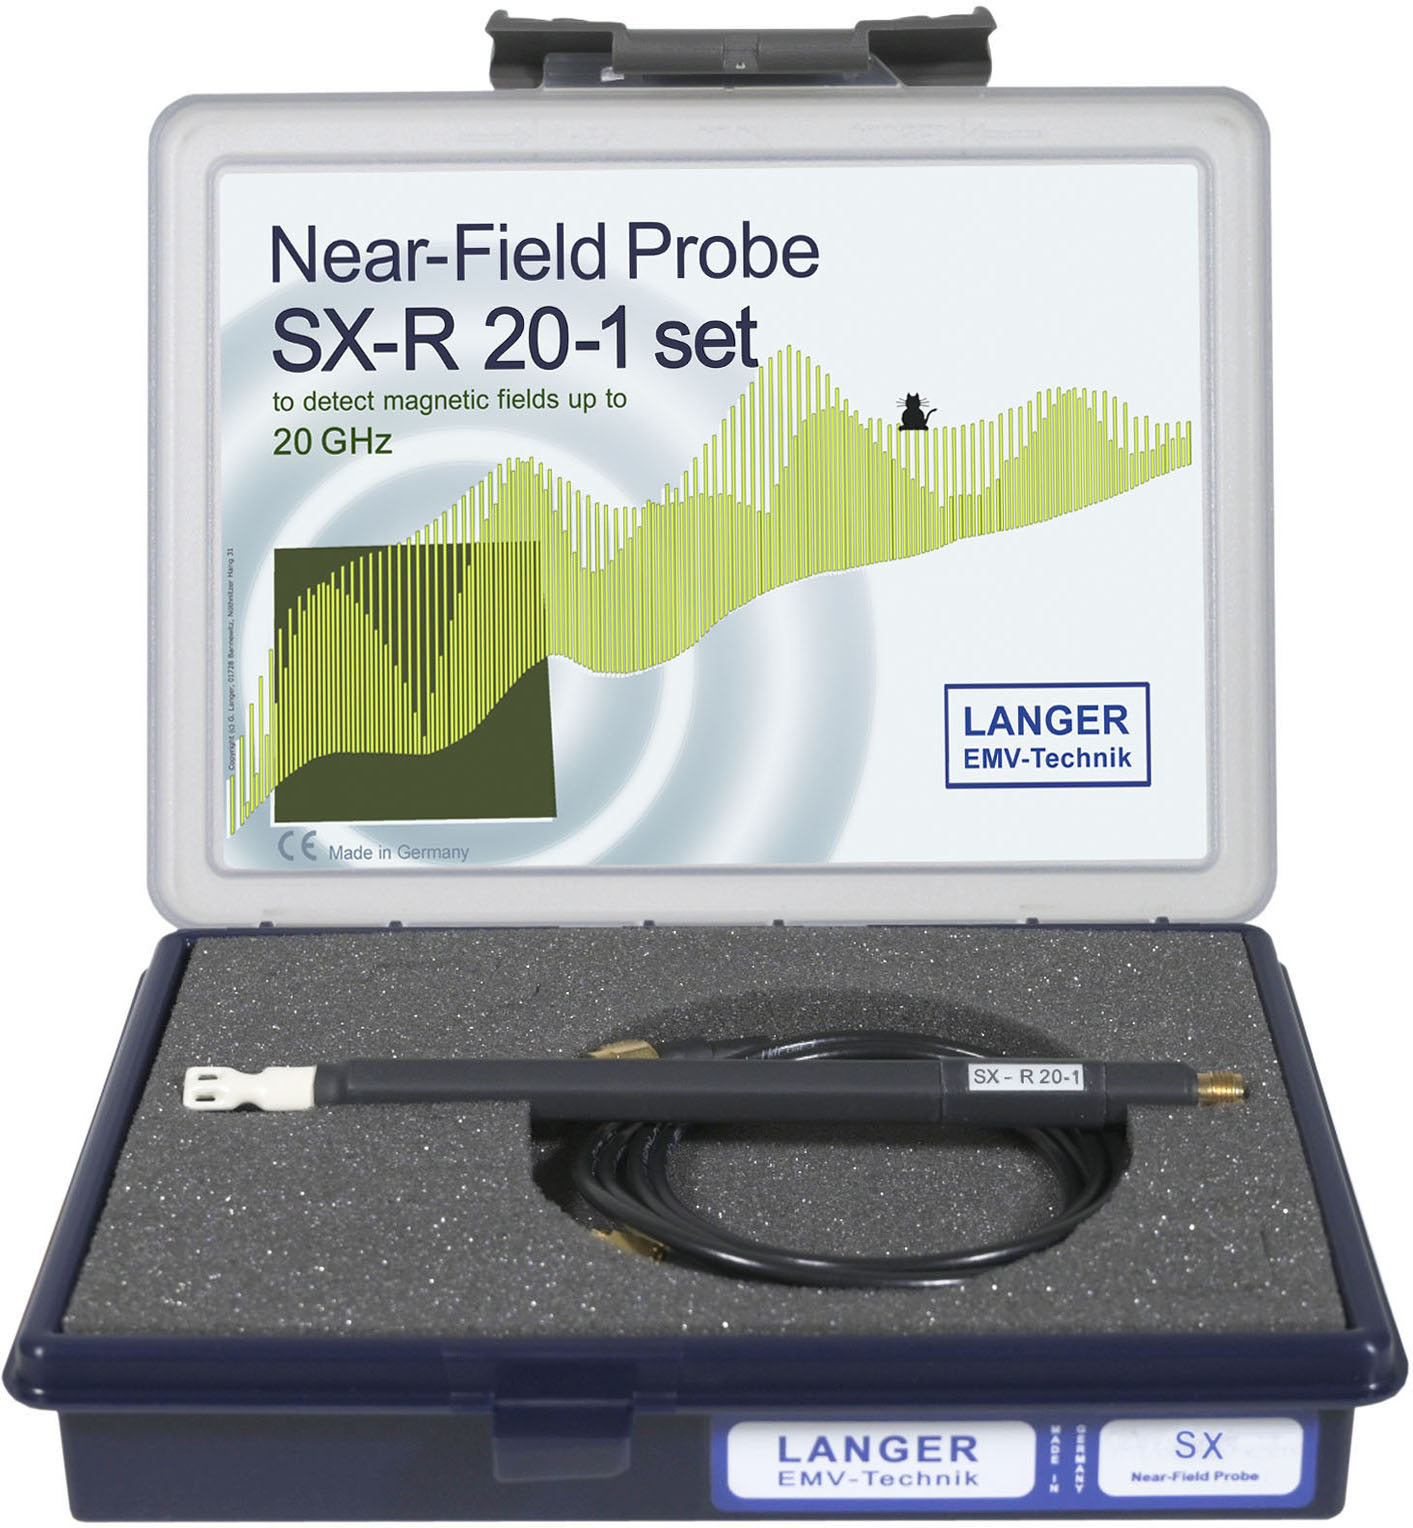 SX-R 20-1 set, Near-Field Probe 1 GHz up to 20 GHz